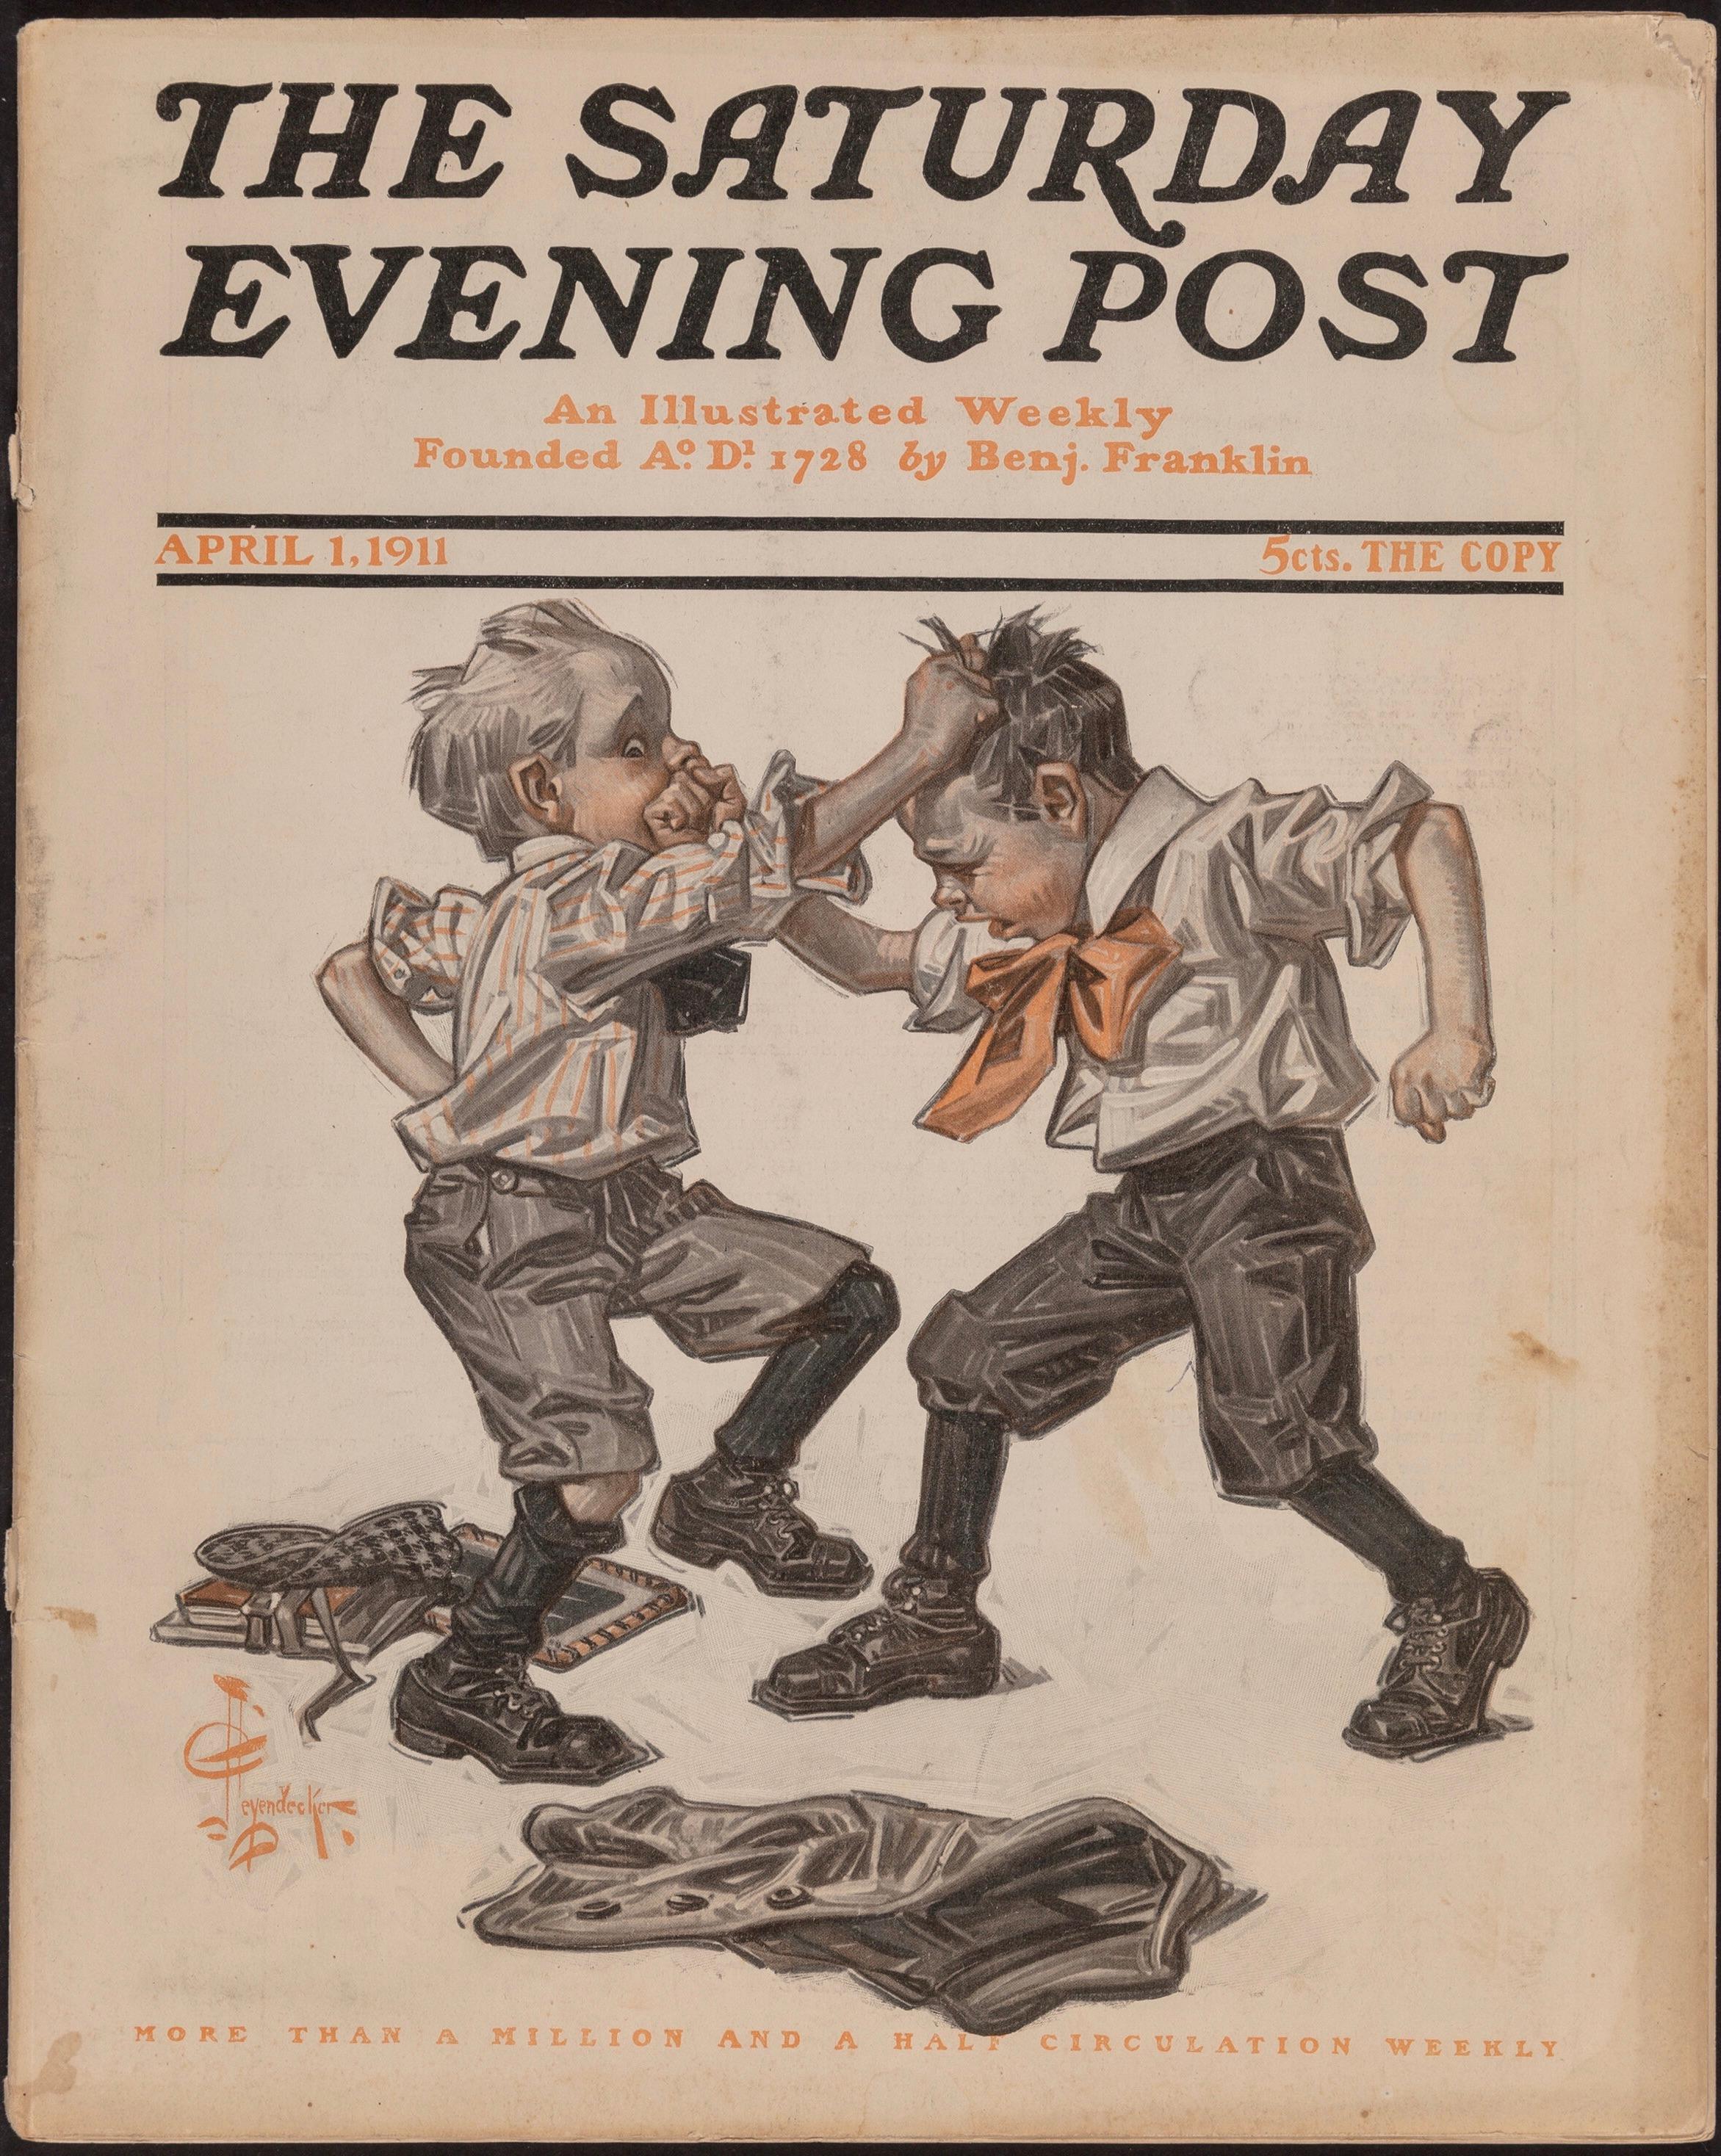 Kampf zwischen zwei Jungen, Titelstudie der Saturday Evening Post, 1911